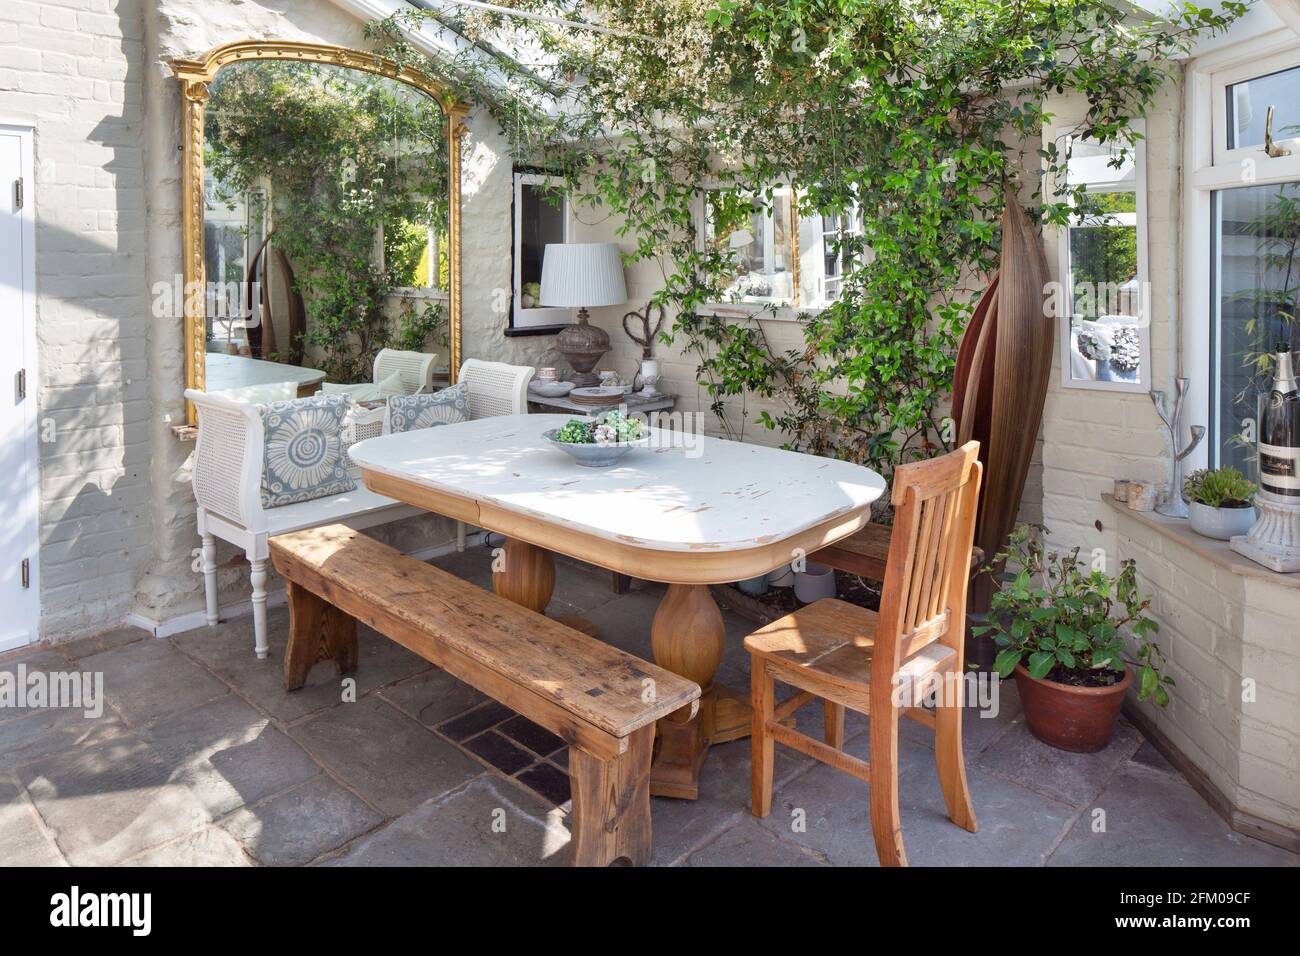 camera con giardino, giardino d'inverno con mobili da giardino in legno e piante Foto Stock